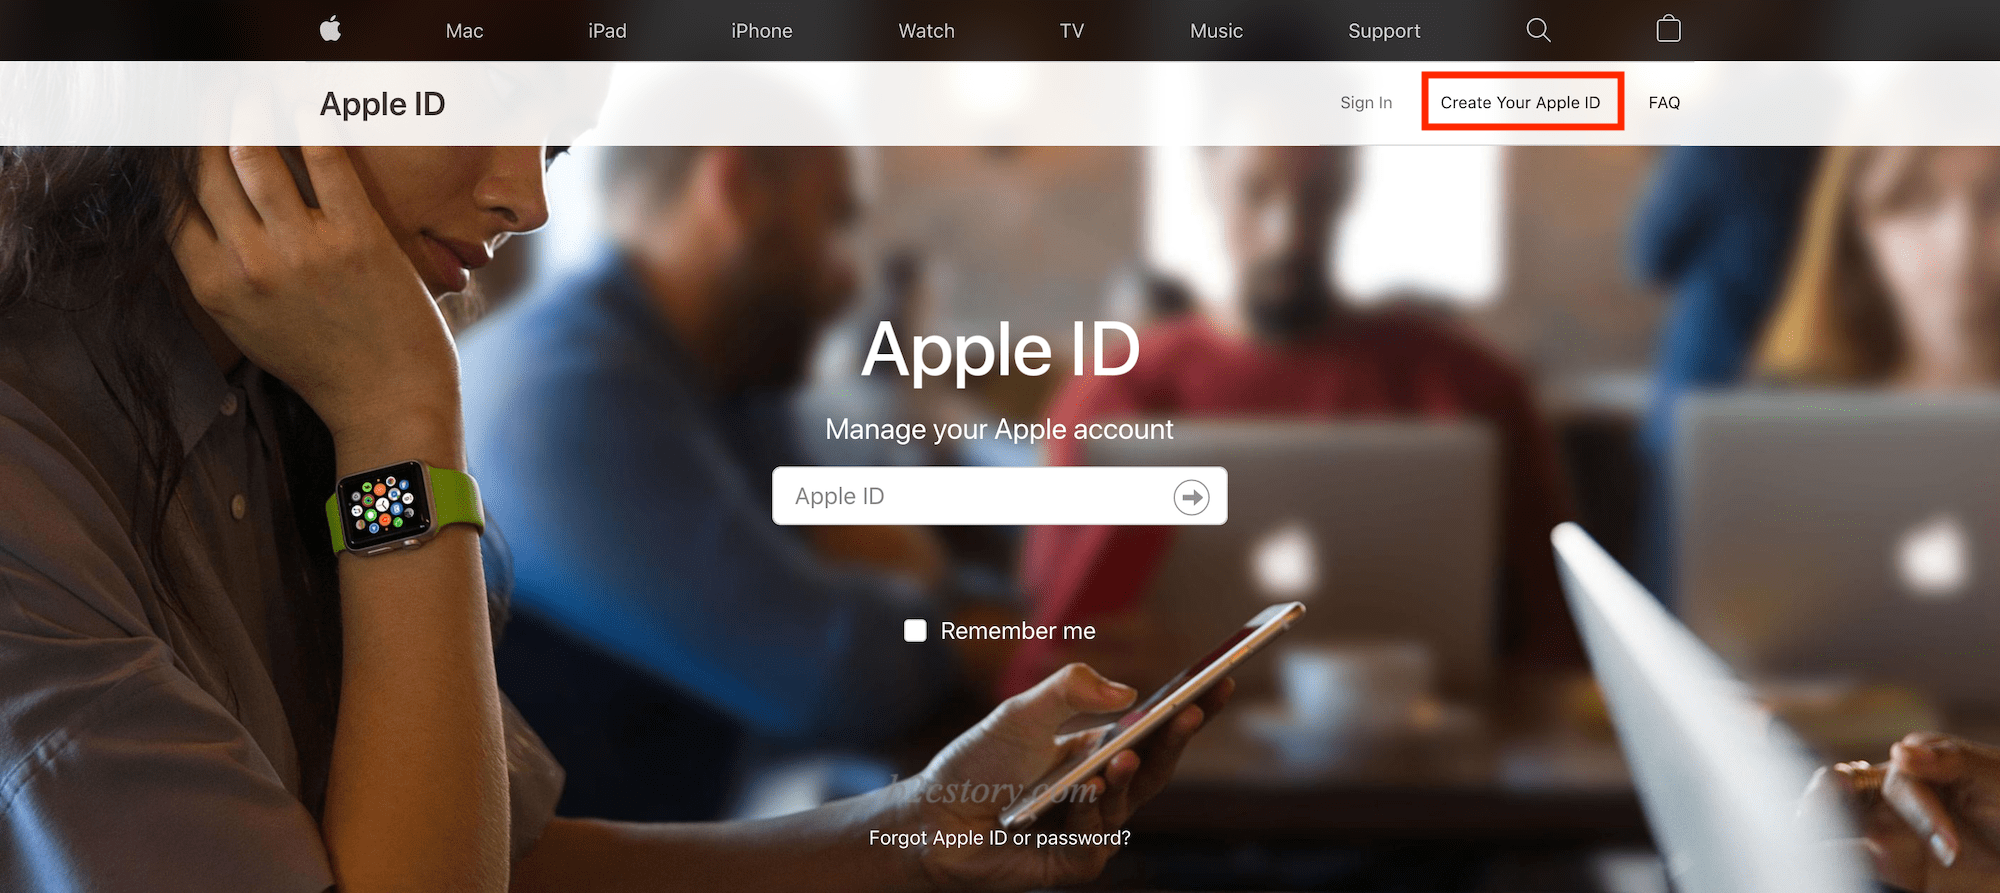 点击右上角的 Create Your Apple ID